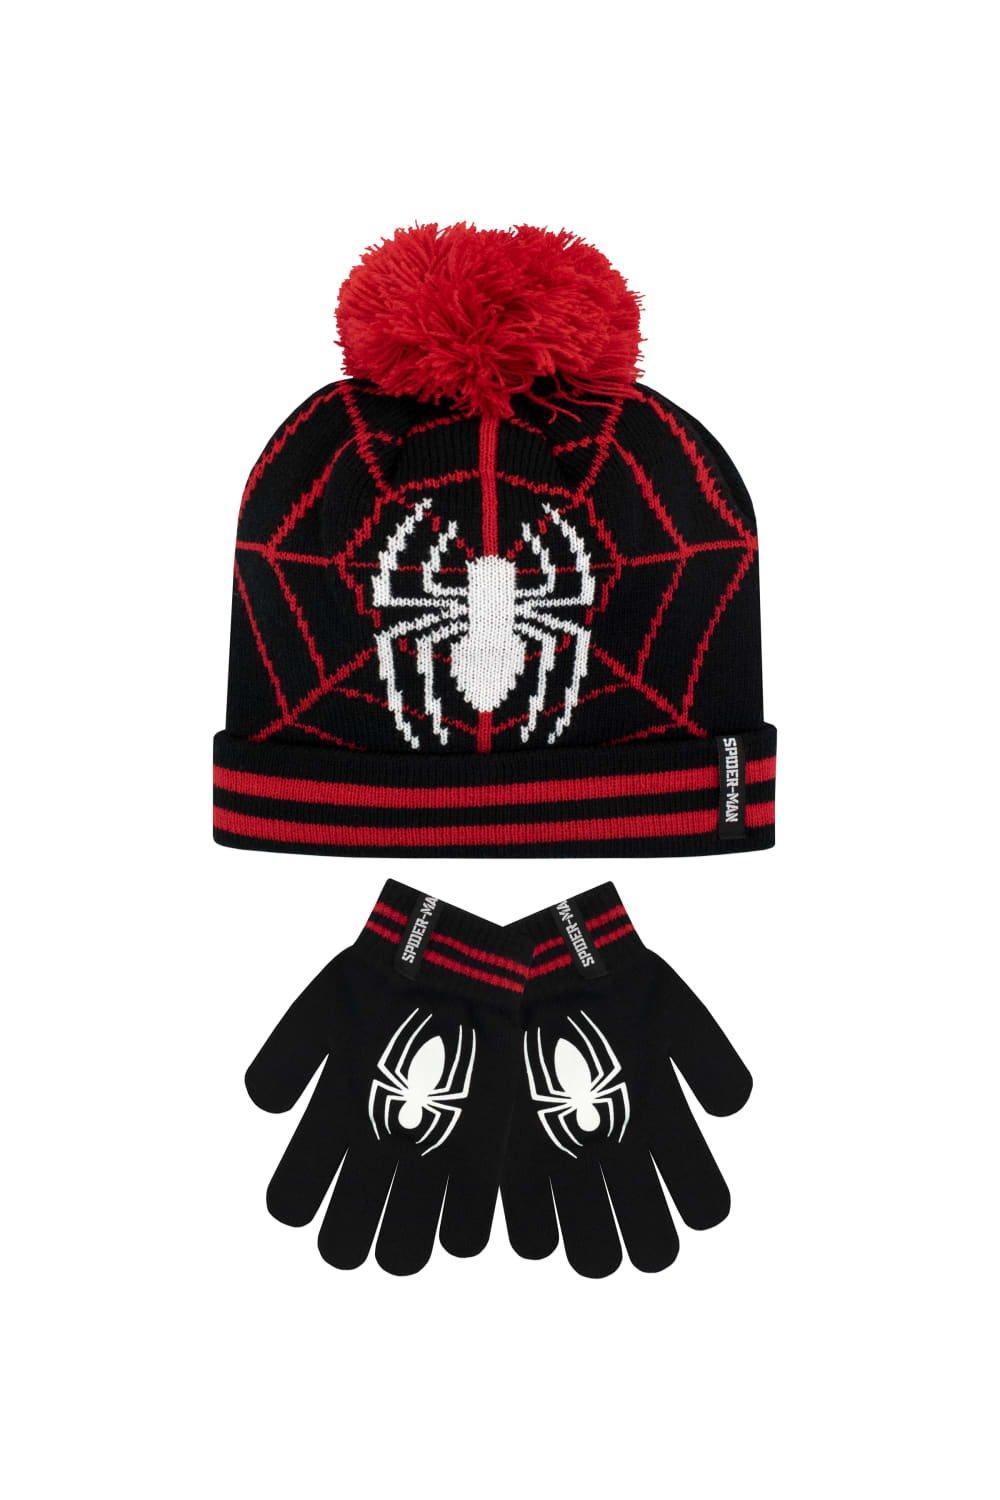 Детский комплект зимней шапки и перчаток «Человек-паук» Marvel, черный шапка шарф комплект с помпоном мультяшная детская зимняя шапка для мальчиков и девочек детская теплая трикотажная детская шапка